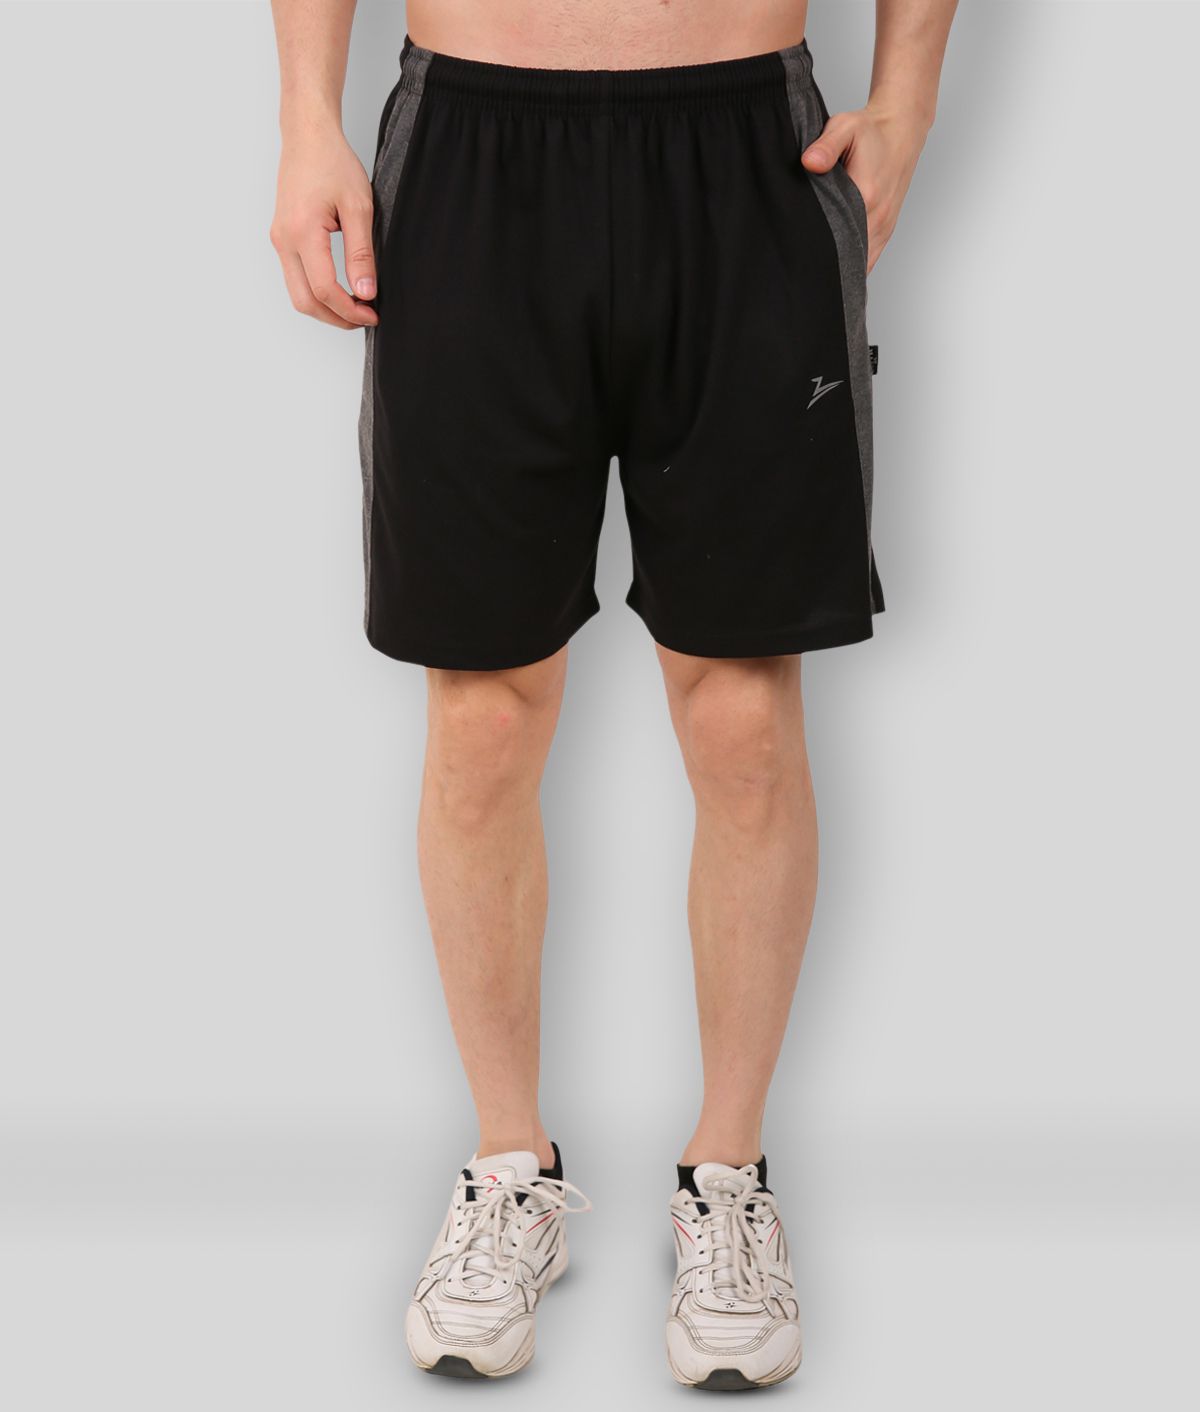     			Zeffit - Black Cotton Blend Men's Shorts ( Pack of 1 )